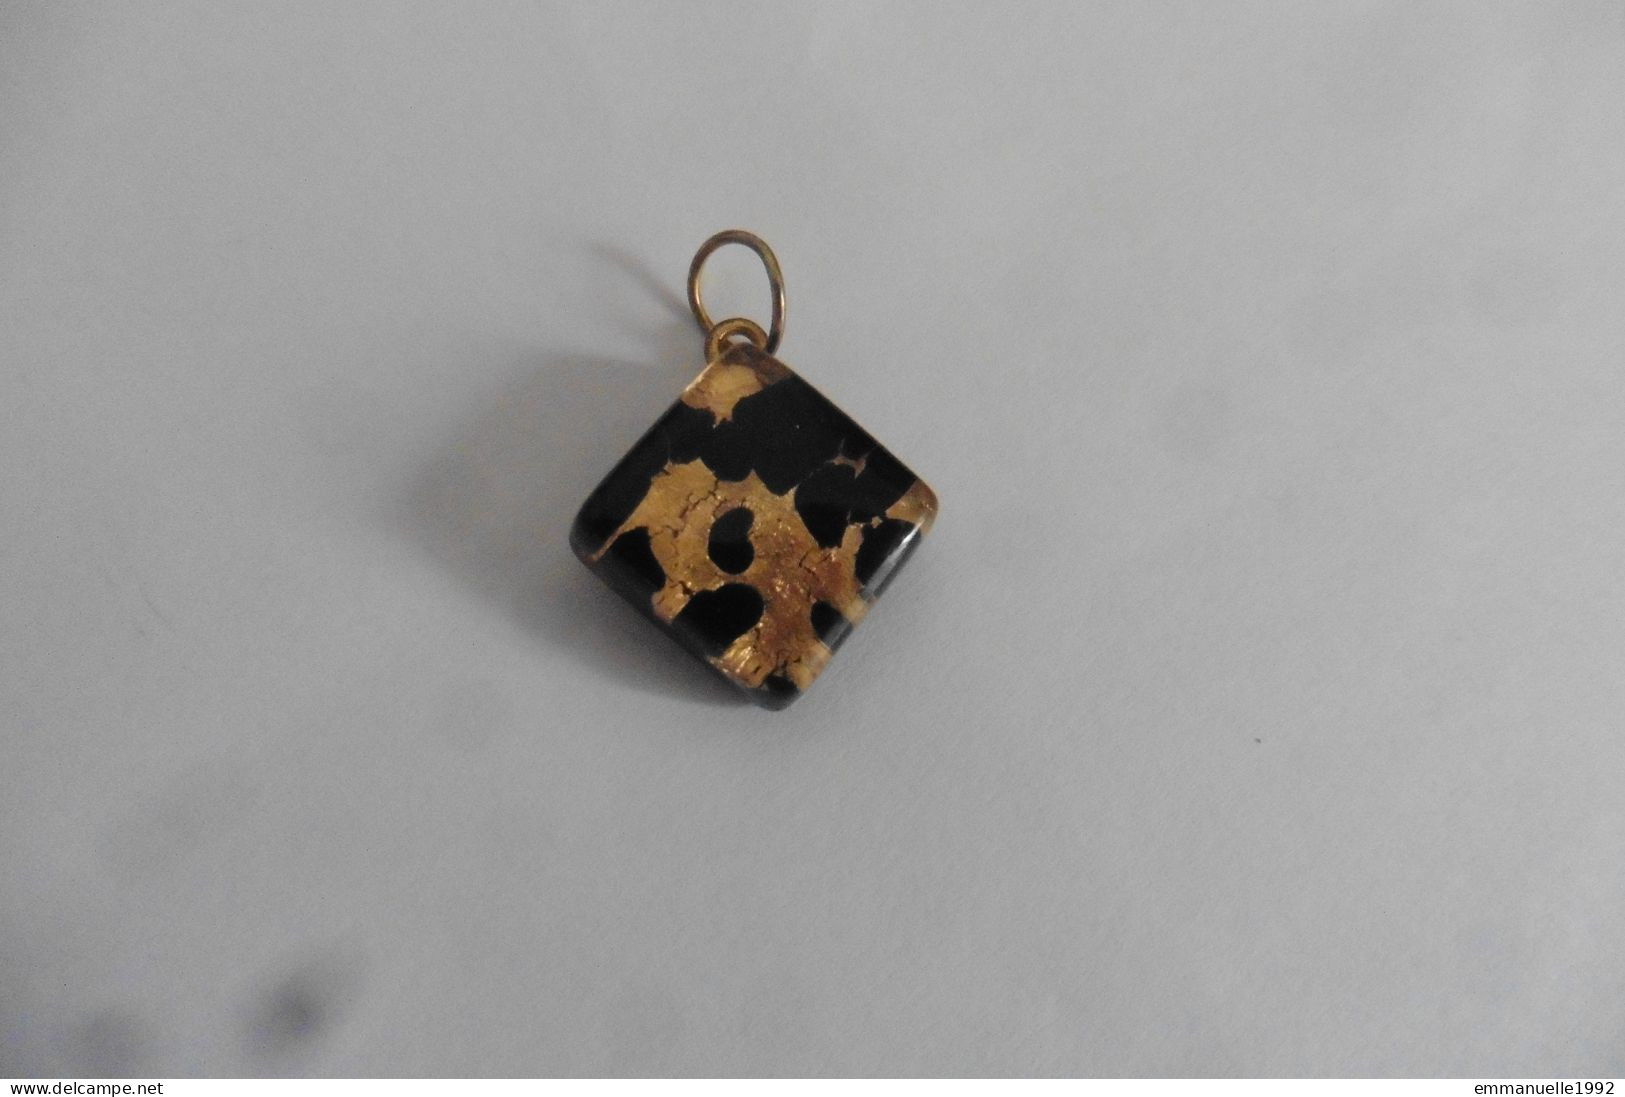 Neuf - Collier pendentif en verre de Murano inspiration Gustav Klimt doré or et noir sur cordon noir